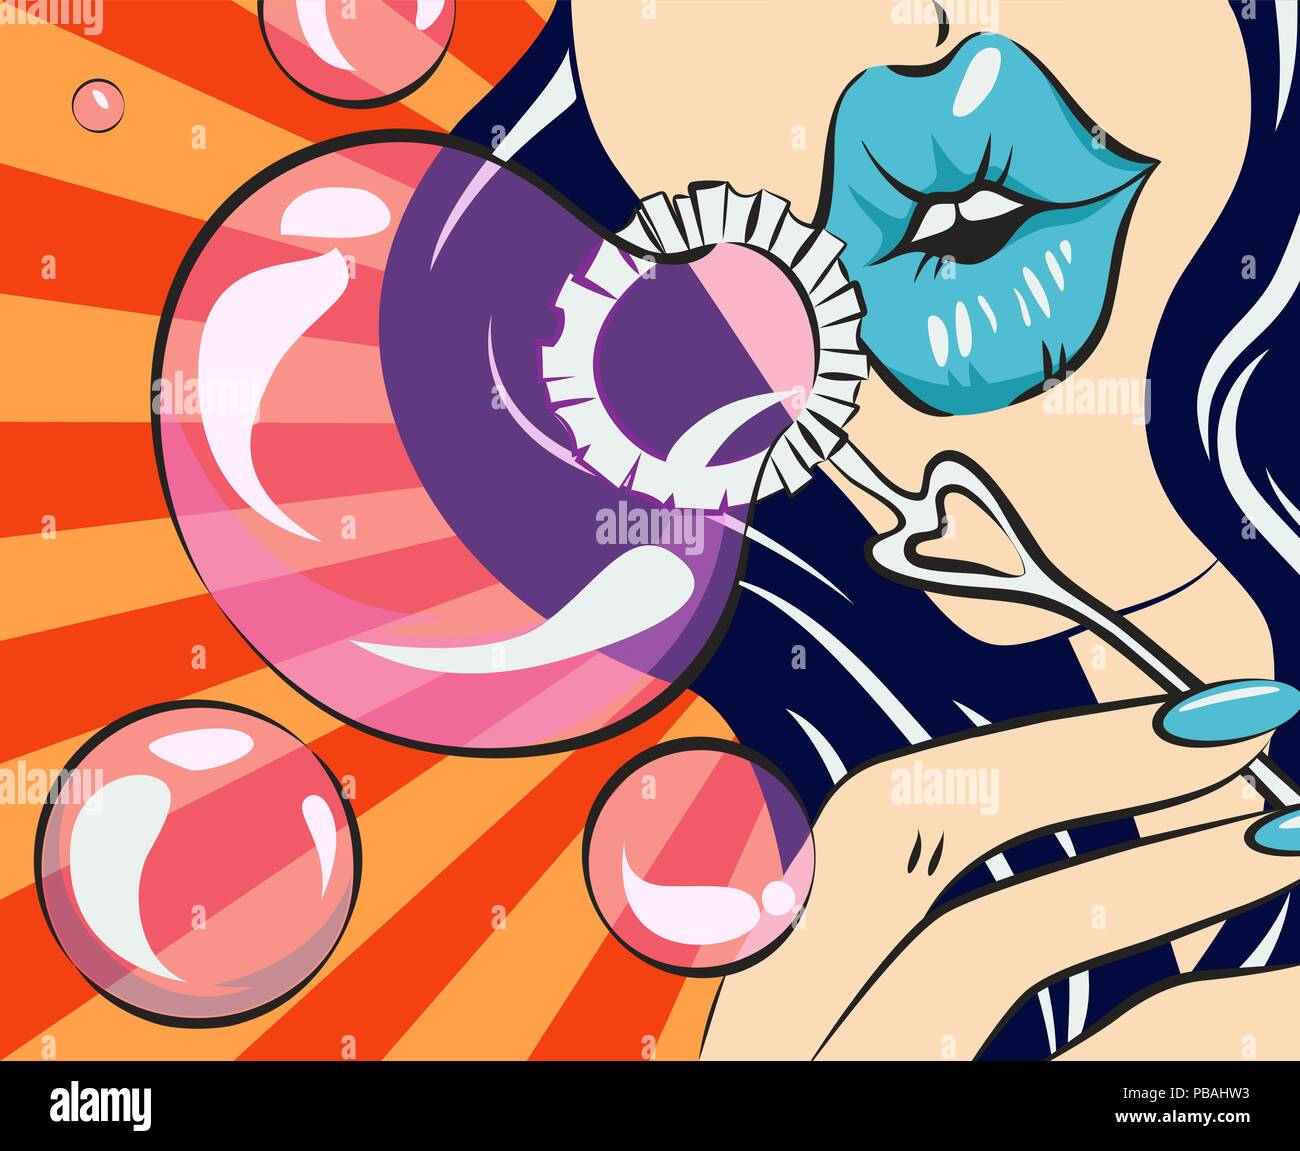 Femme avec les lèvres bleues faisant des bulles de savon. Vector illustration de style rétro. Brunette woman dans pop art style. Illustration de Vecteur